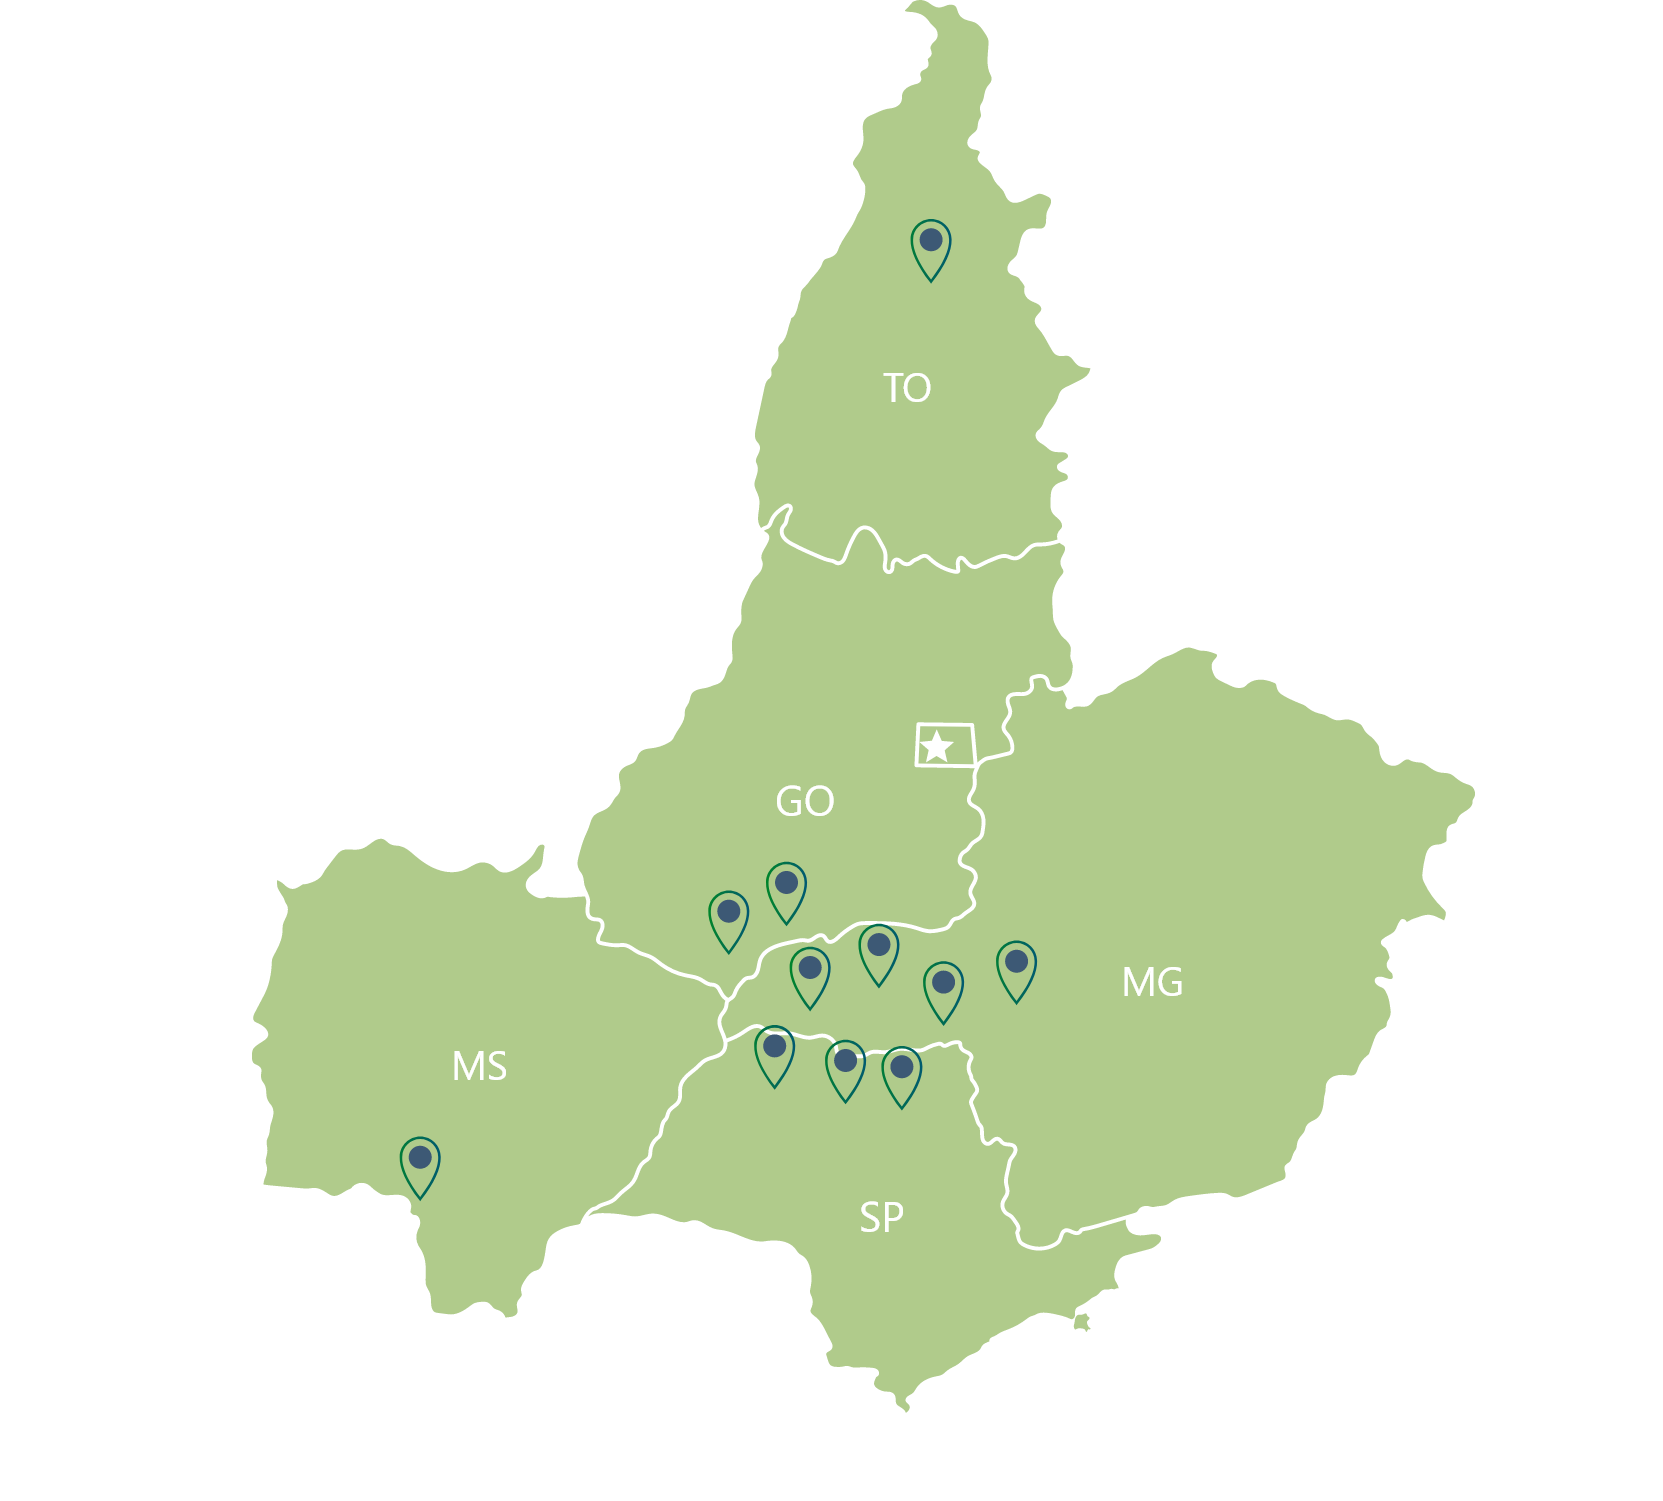 Mapa com locais apontados na lista de capacidades